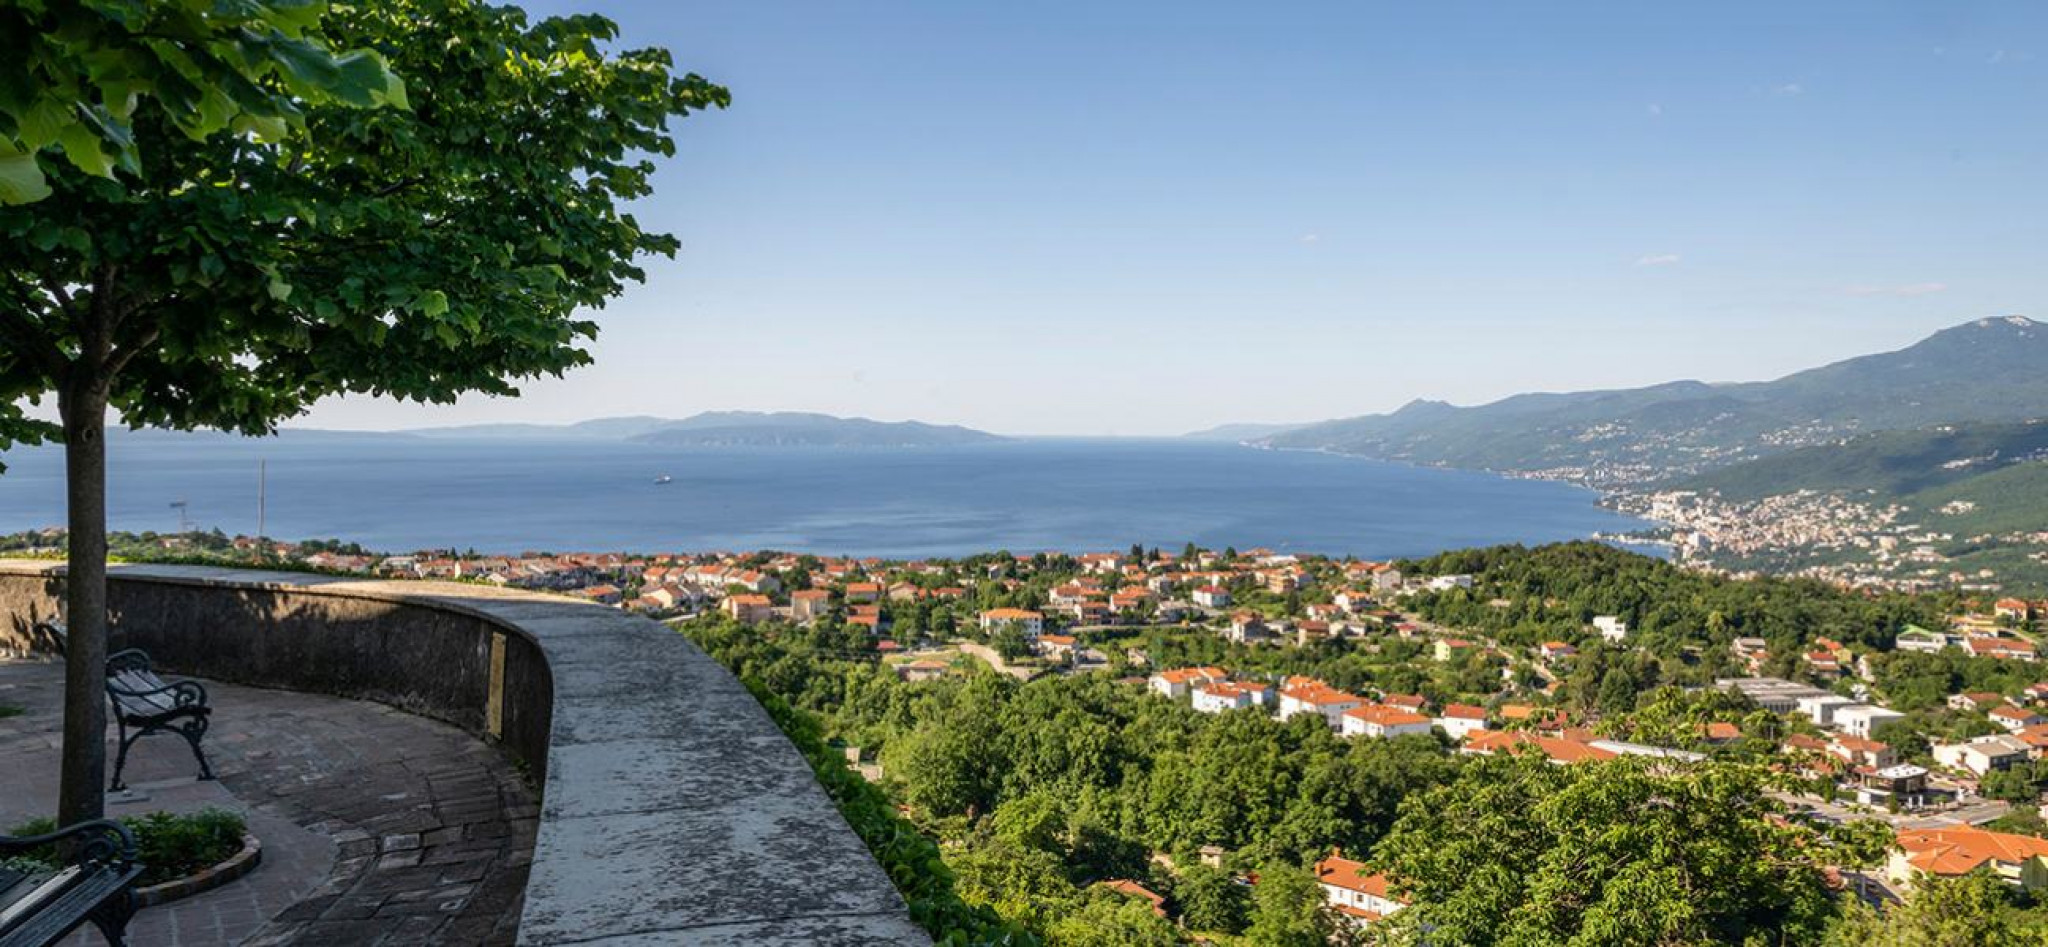 Blick von Kastav in die Kvarner Bucht, rechts im Bild liegt Opatija